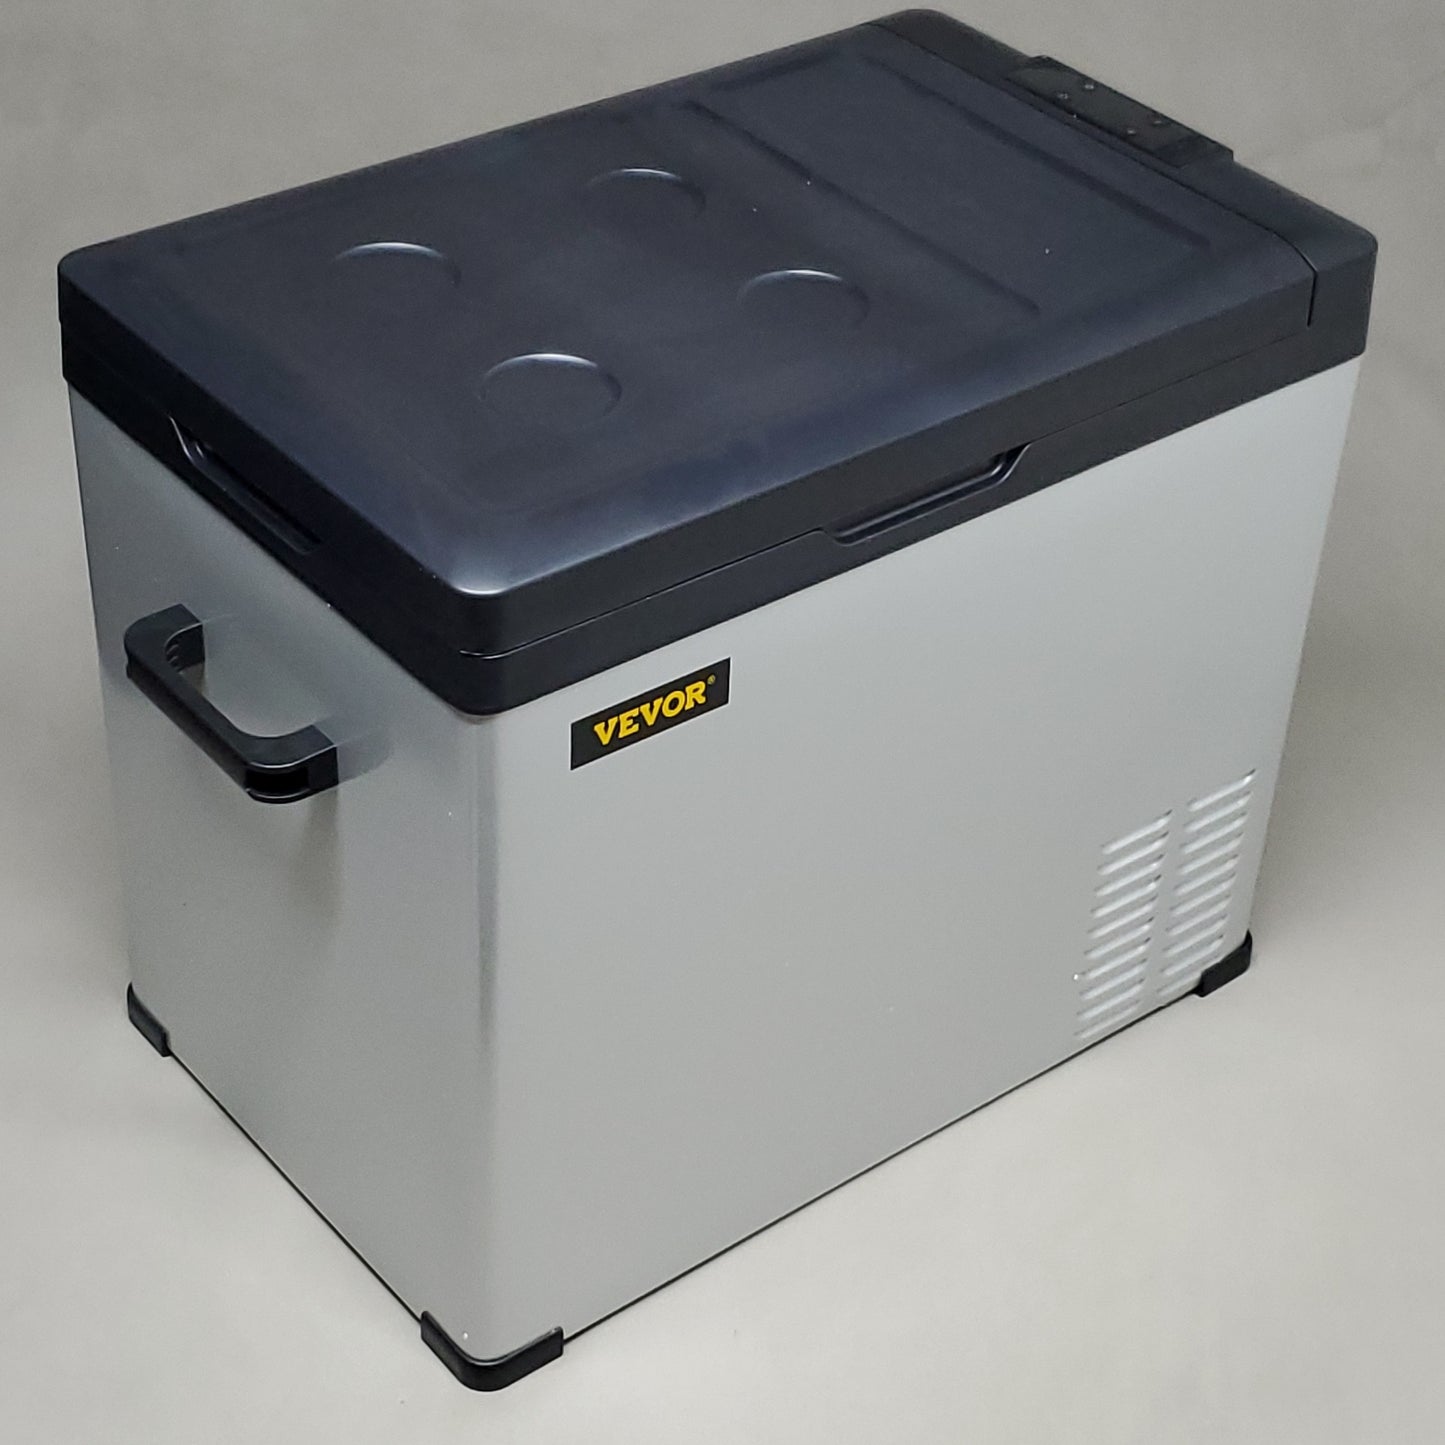 VEVOR 12 Volt Refrigerator, Portable Refrigerator(-4℉~68℉)With APP Control(New)